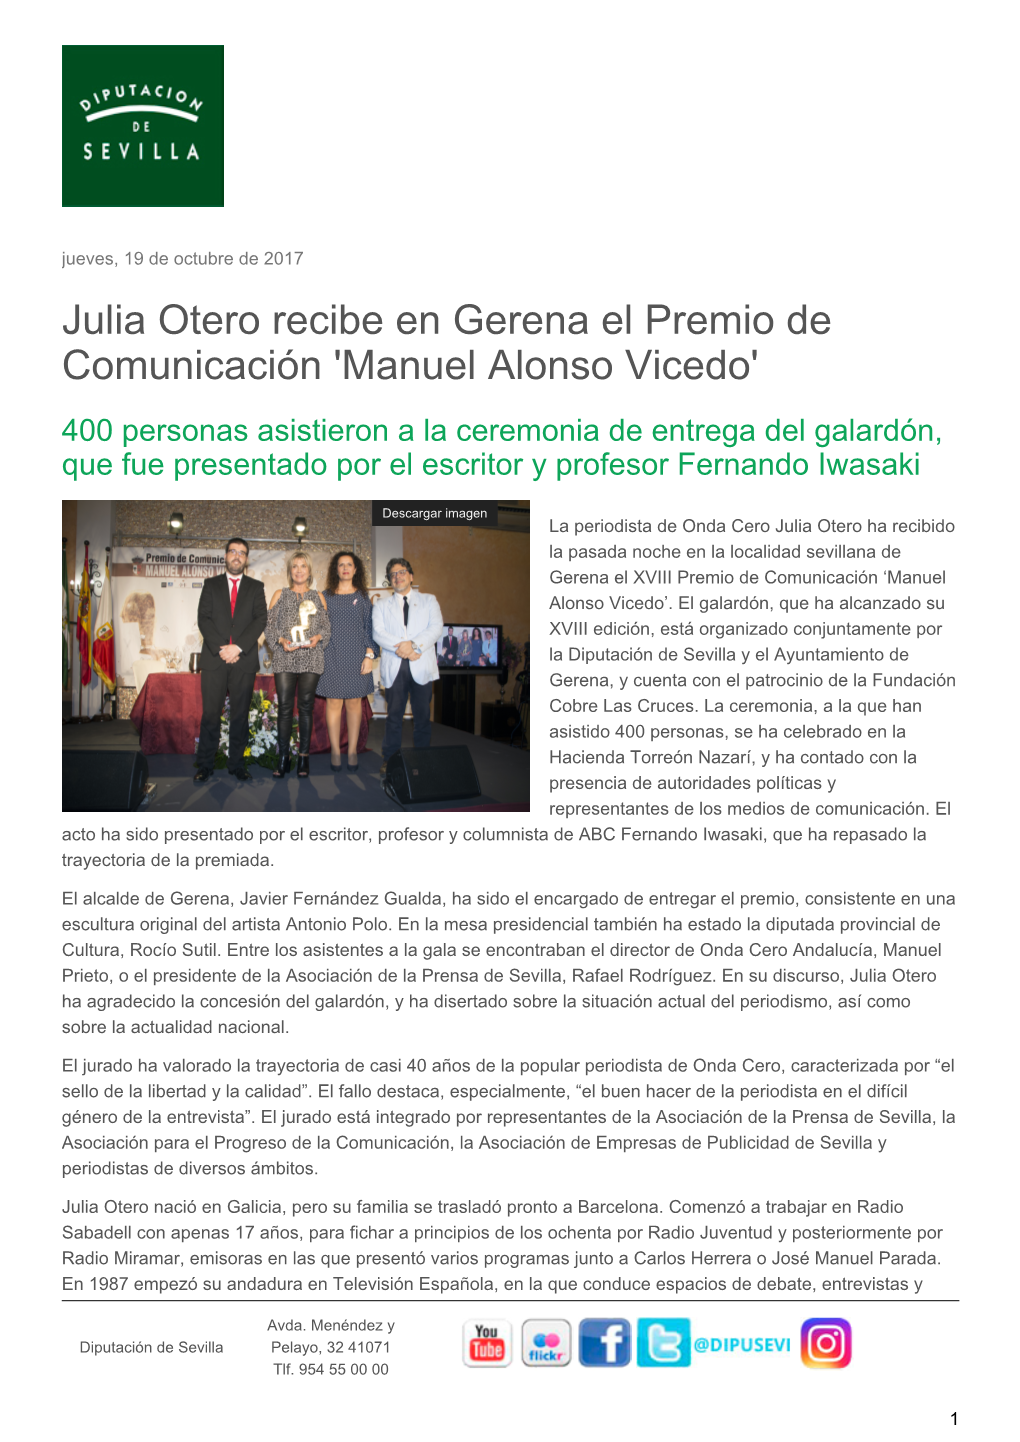 Julia Otero Recibe En Gerena El Premio De Comunicación 'Manuel